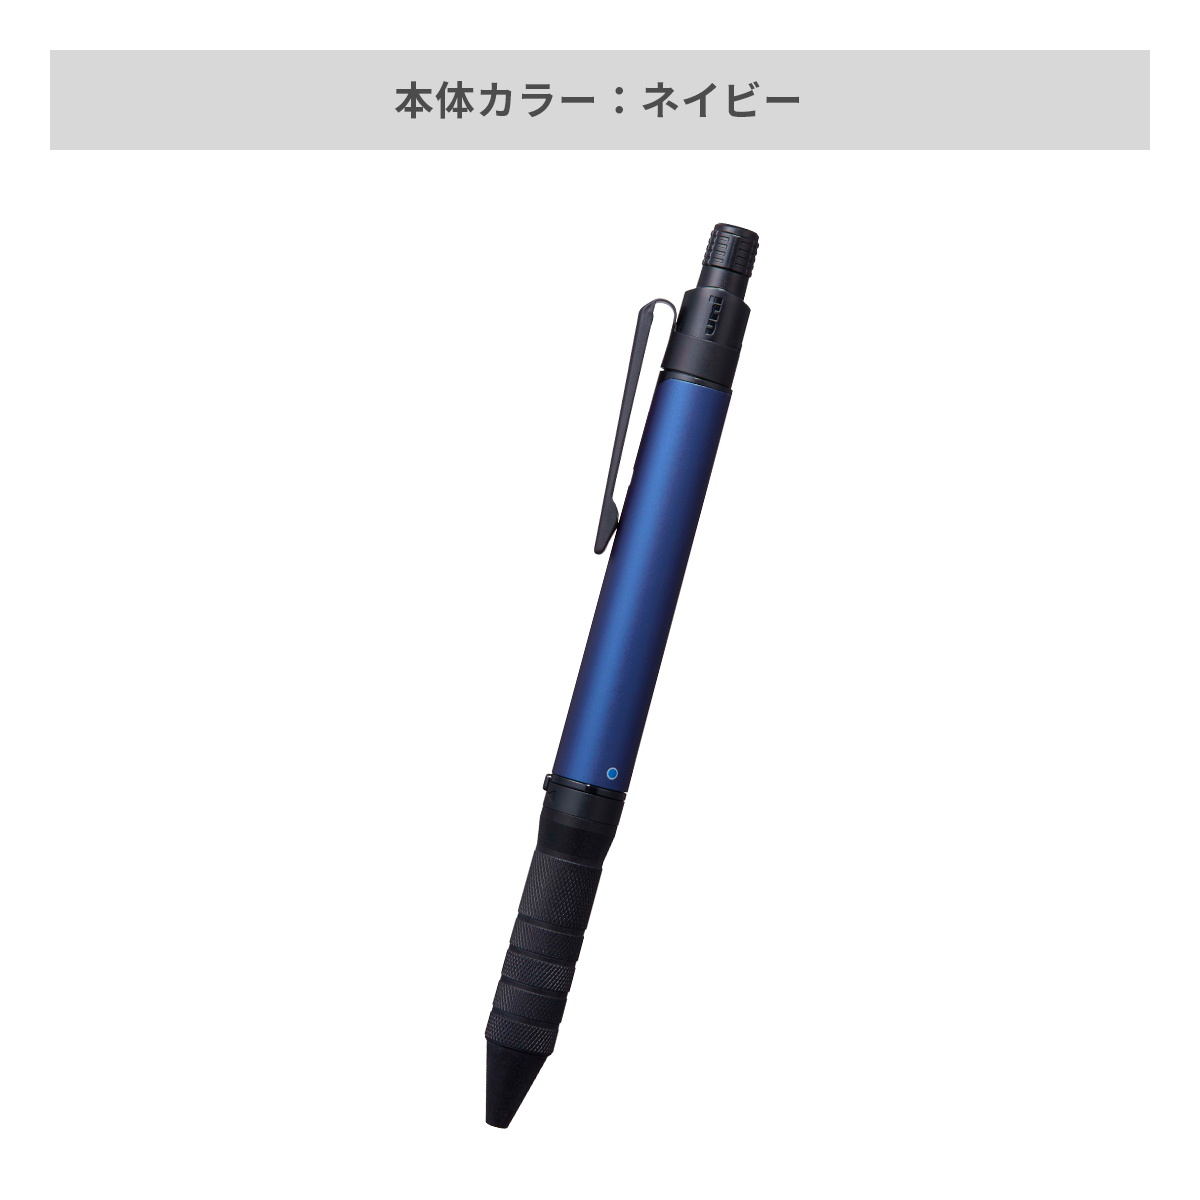 三菱鉛筆 ユニボール アールイー3ビズ 0.5mm【名入れボールペン / パッド印刷】 画像5